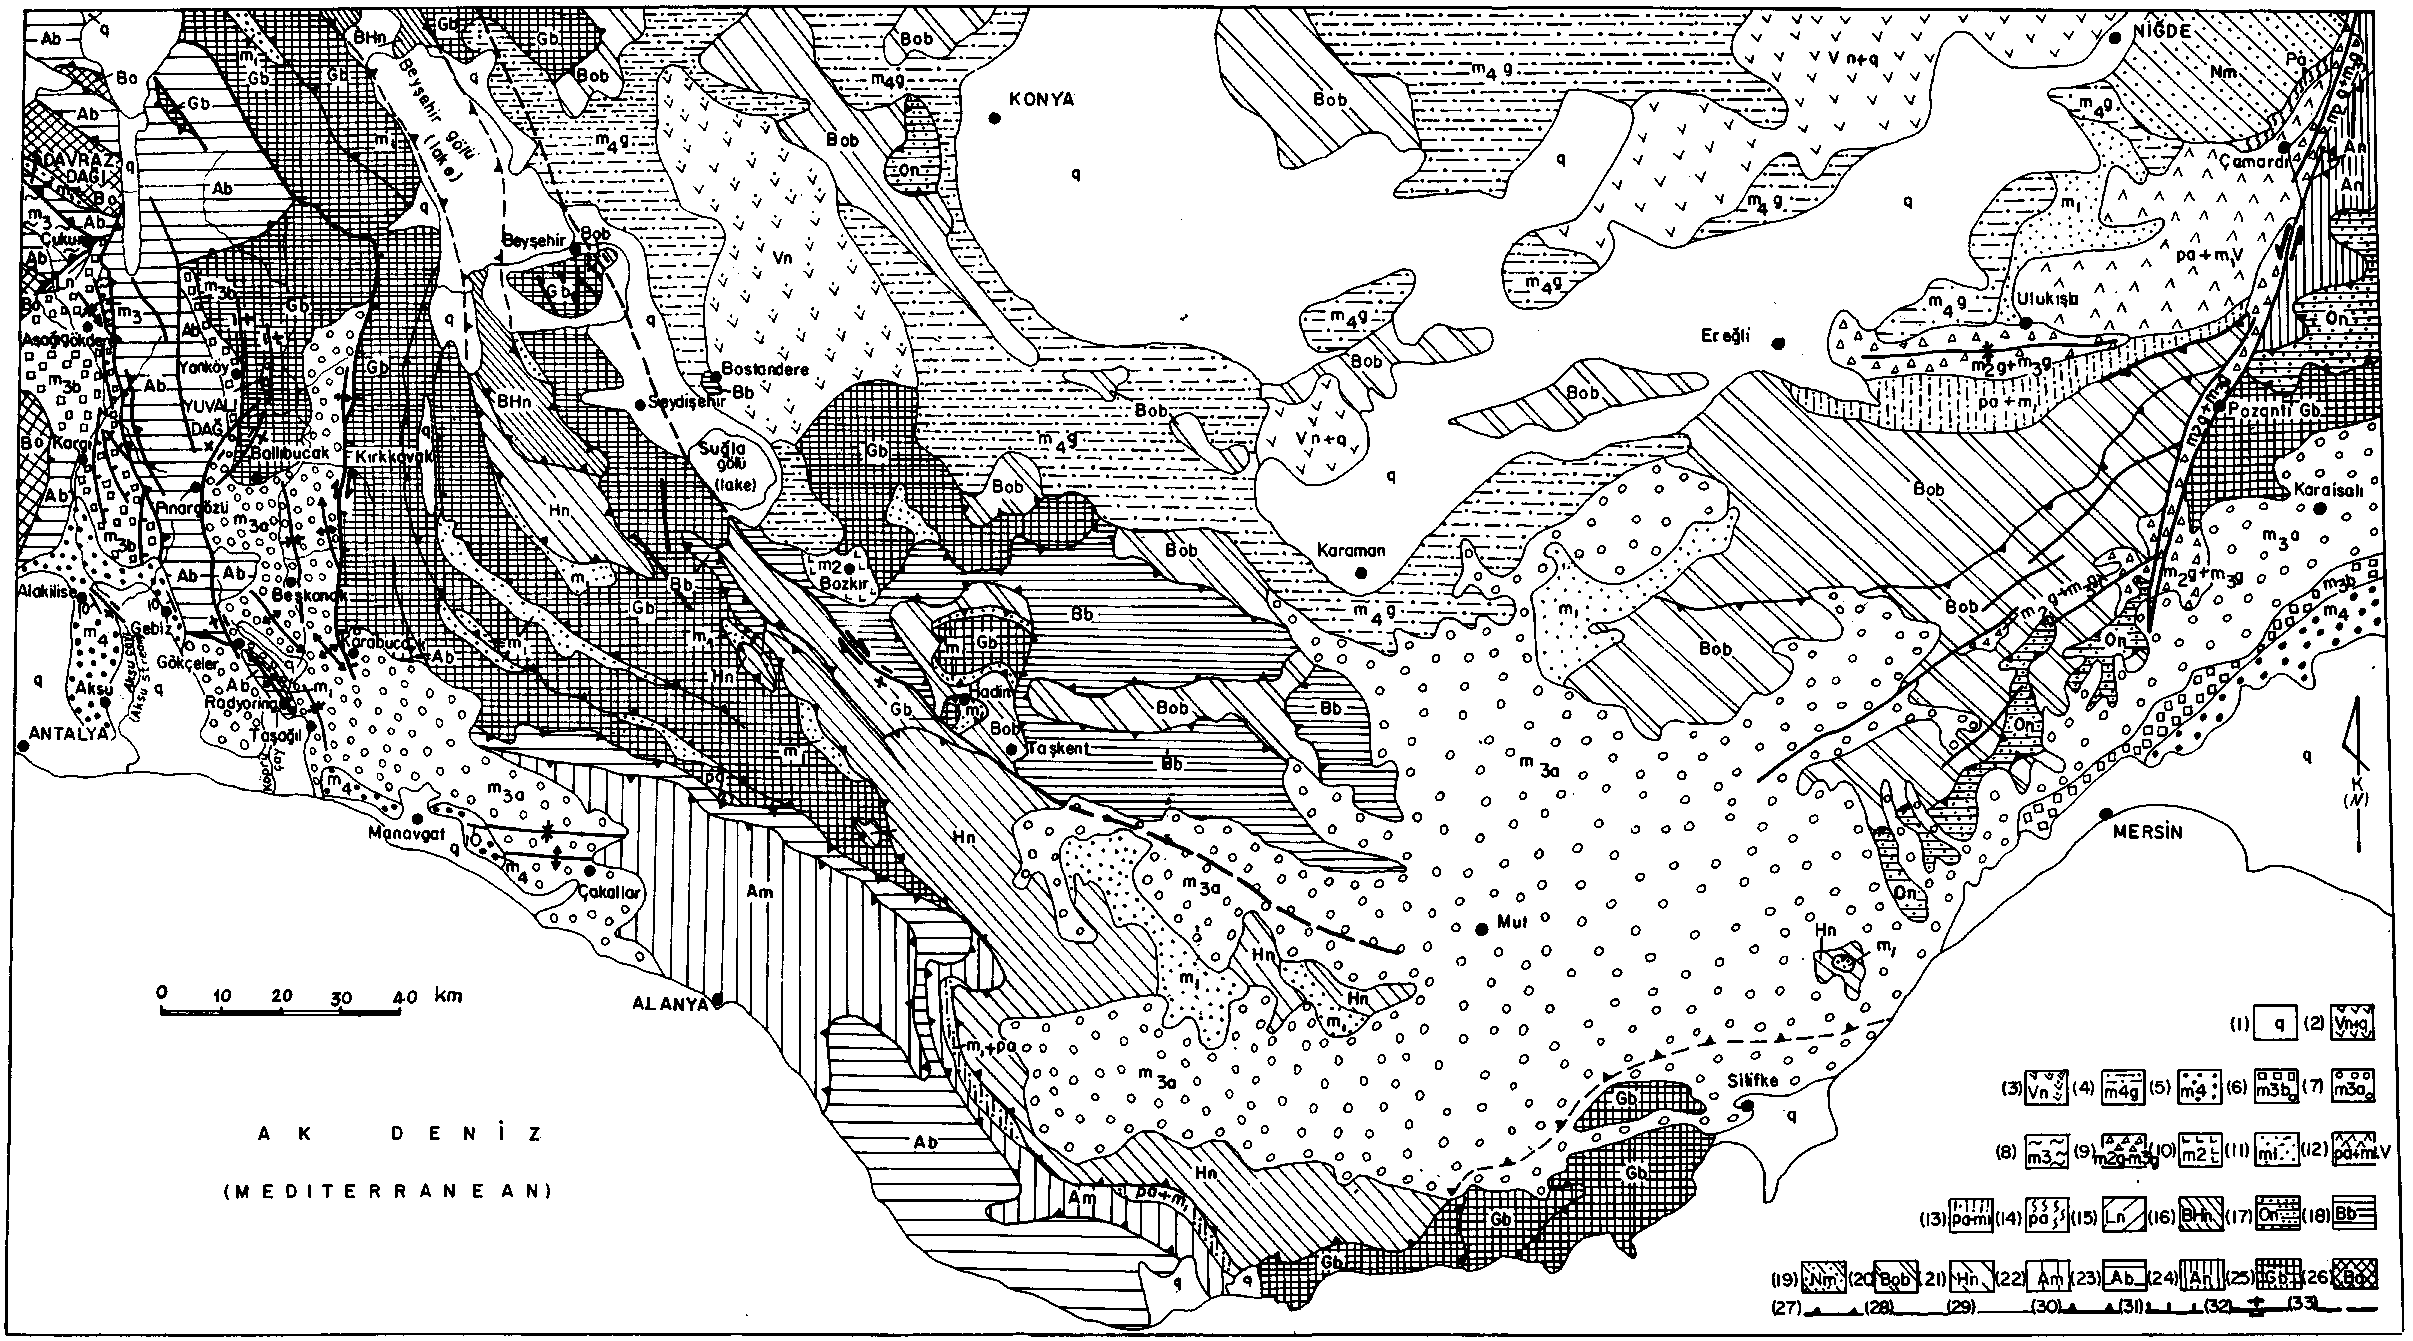 k.l- Orta Toroslar'ın jeolojisi, l- Kuvaterner çökelleri; 2 Neojen-Kuvaterner volkanitleri; 3- Neojen volkanitleri; 4- Karasal Pliyosen çökelleri; 5 Denizel Pliyosen çökelleri; 6- Tortoniyen